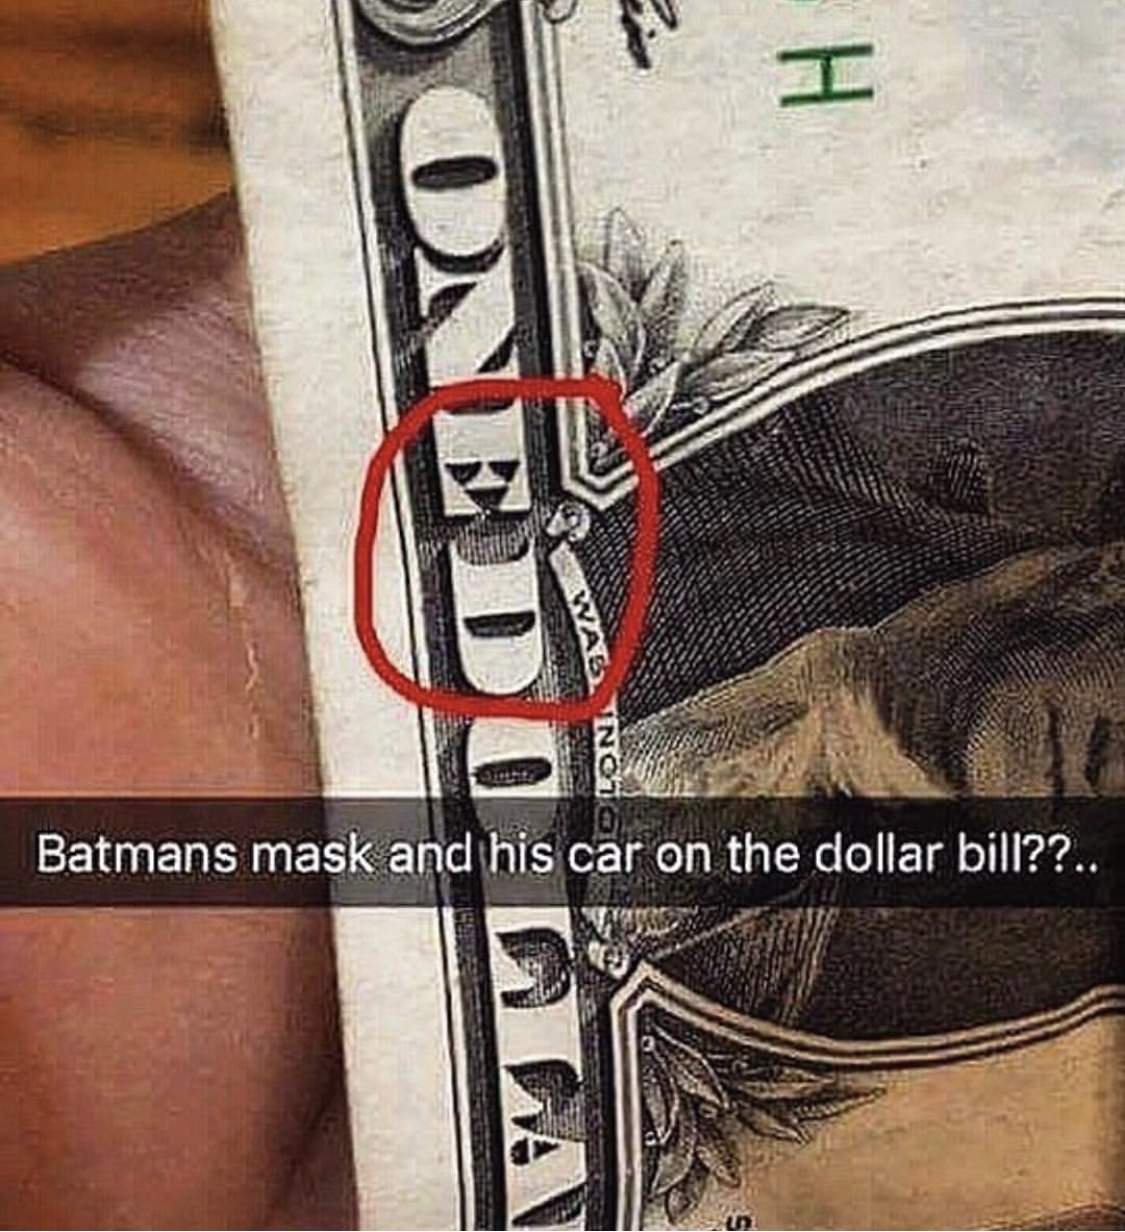 batman and car on dollar bill - H Sonedo Da Un Batmans mask and his car on the dollar bill??..